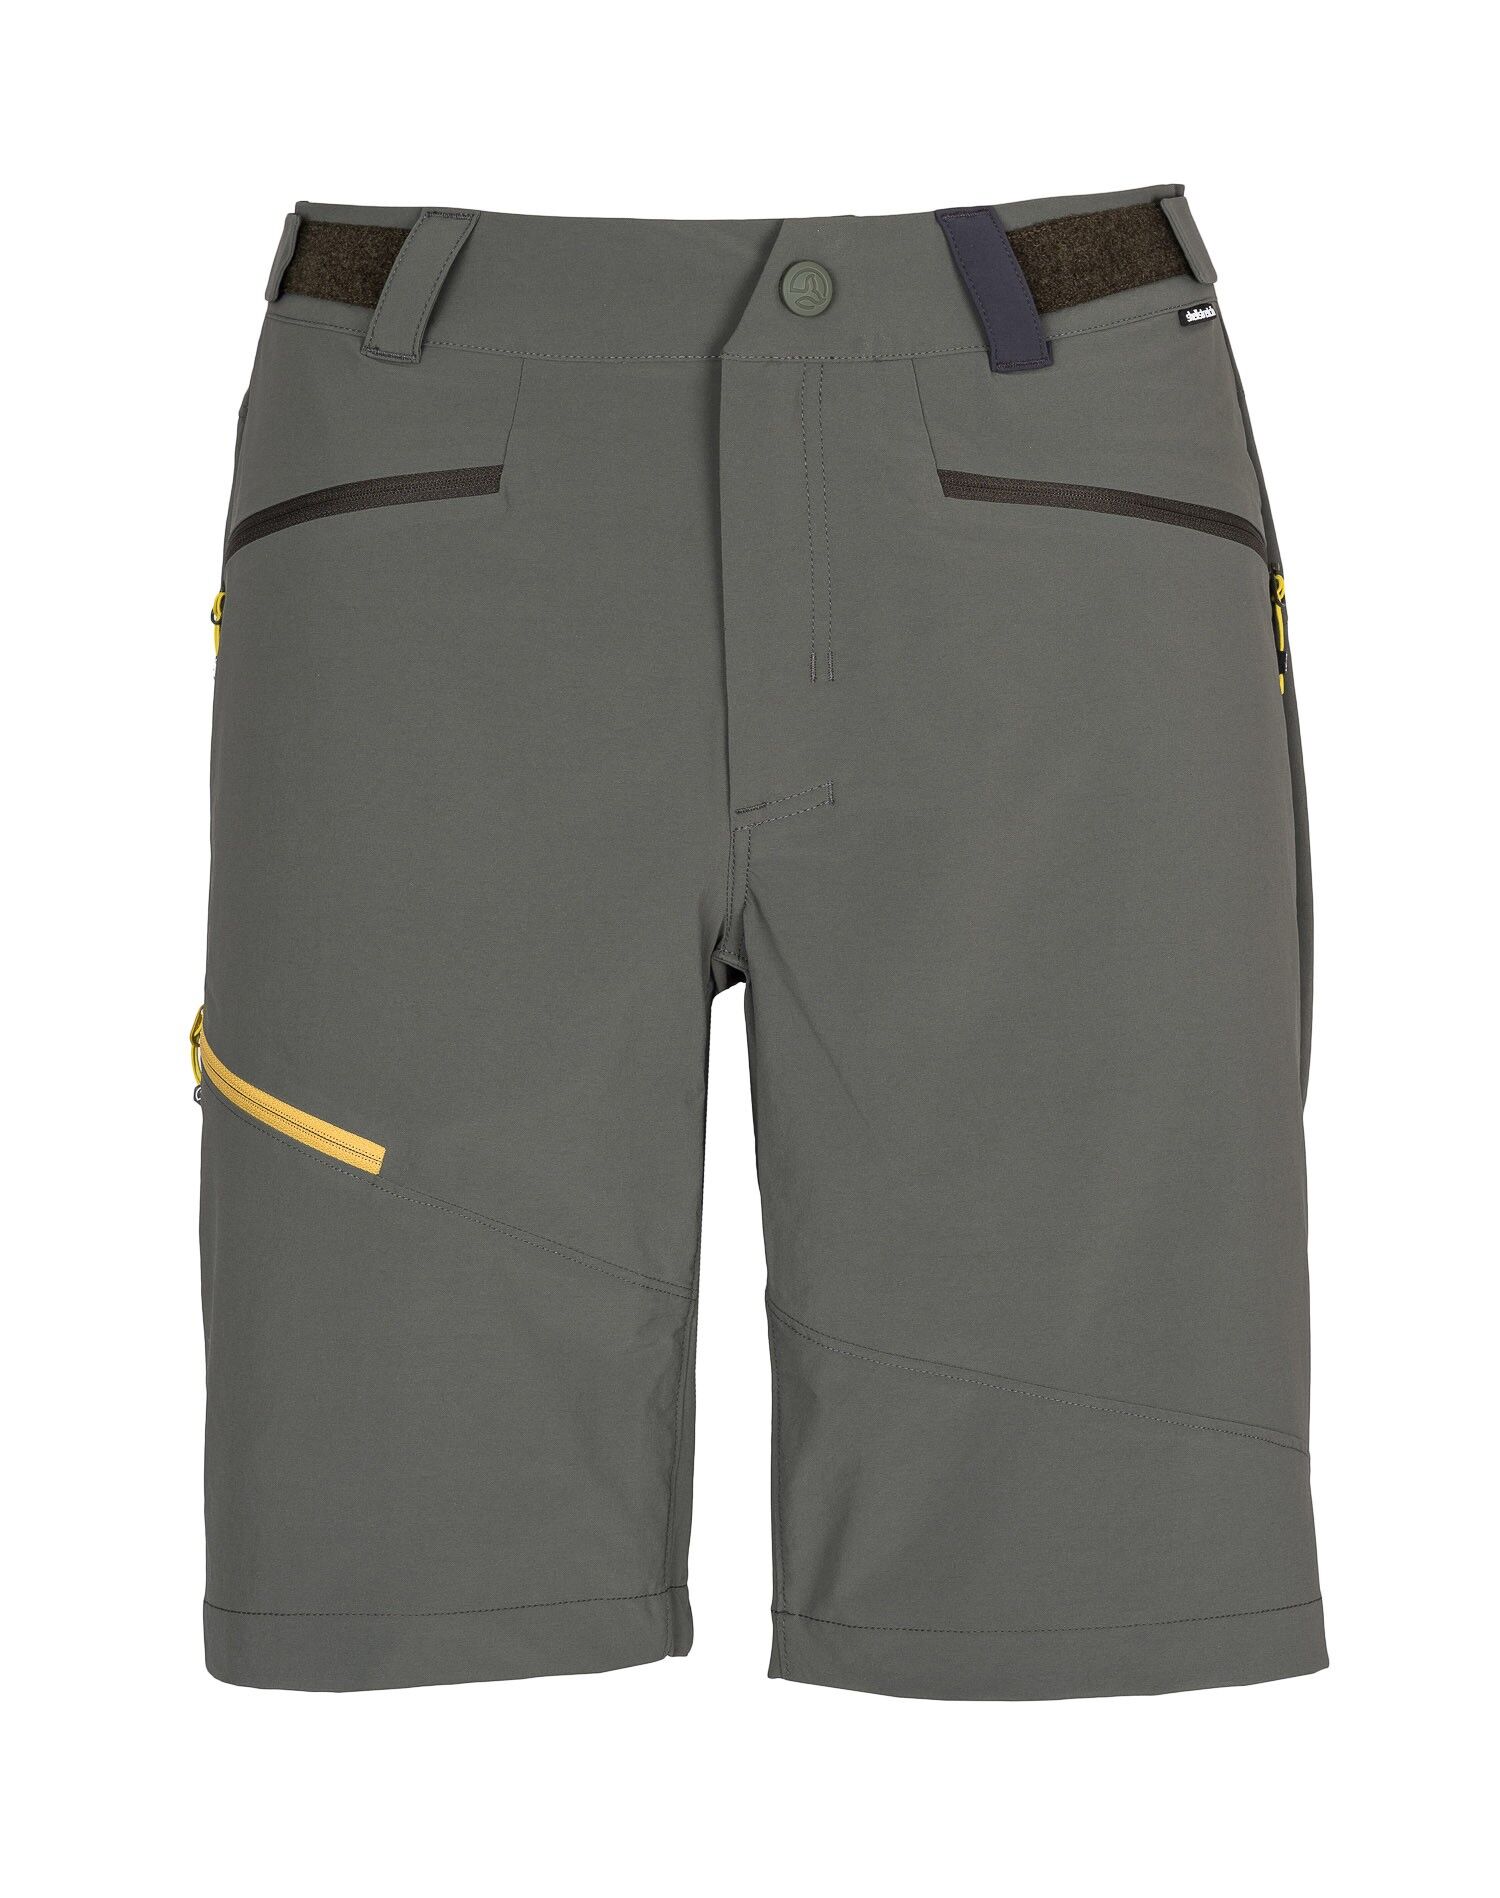 Ternua Rotor Bermuda - Pantalones cortos de senderismo - Hombre